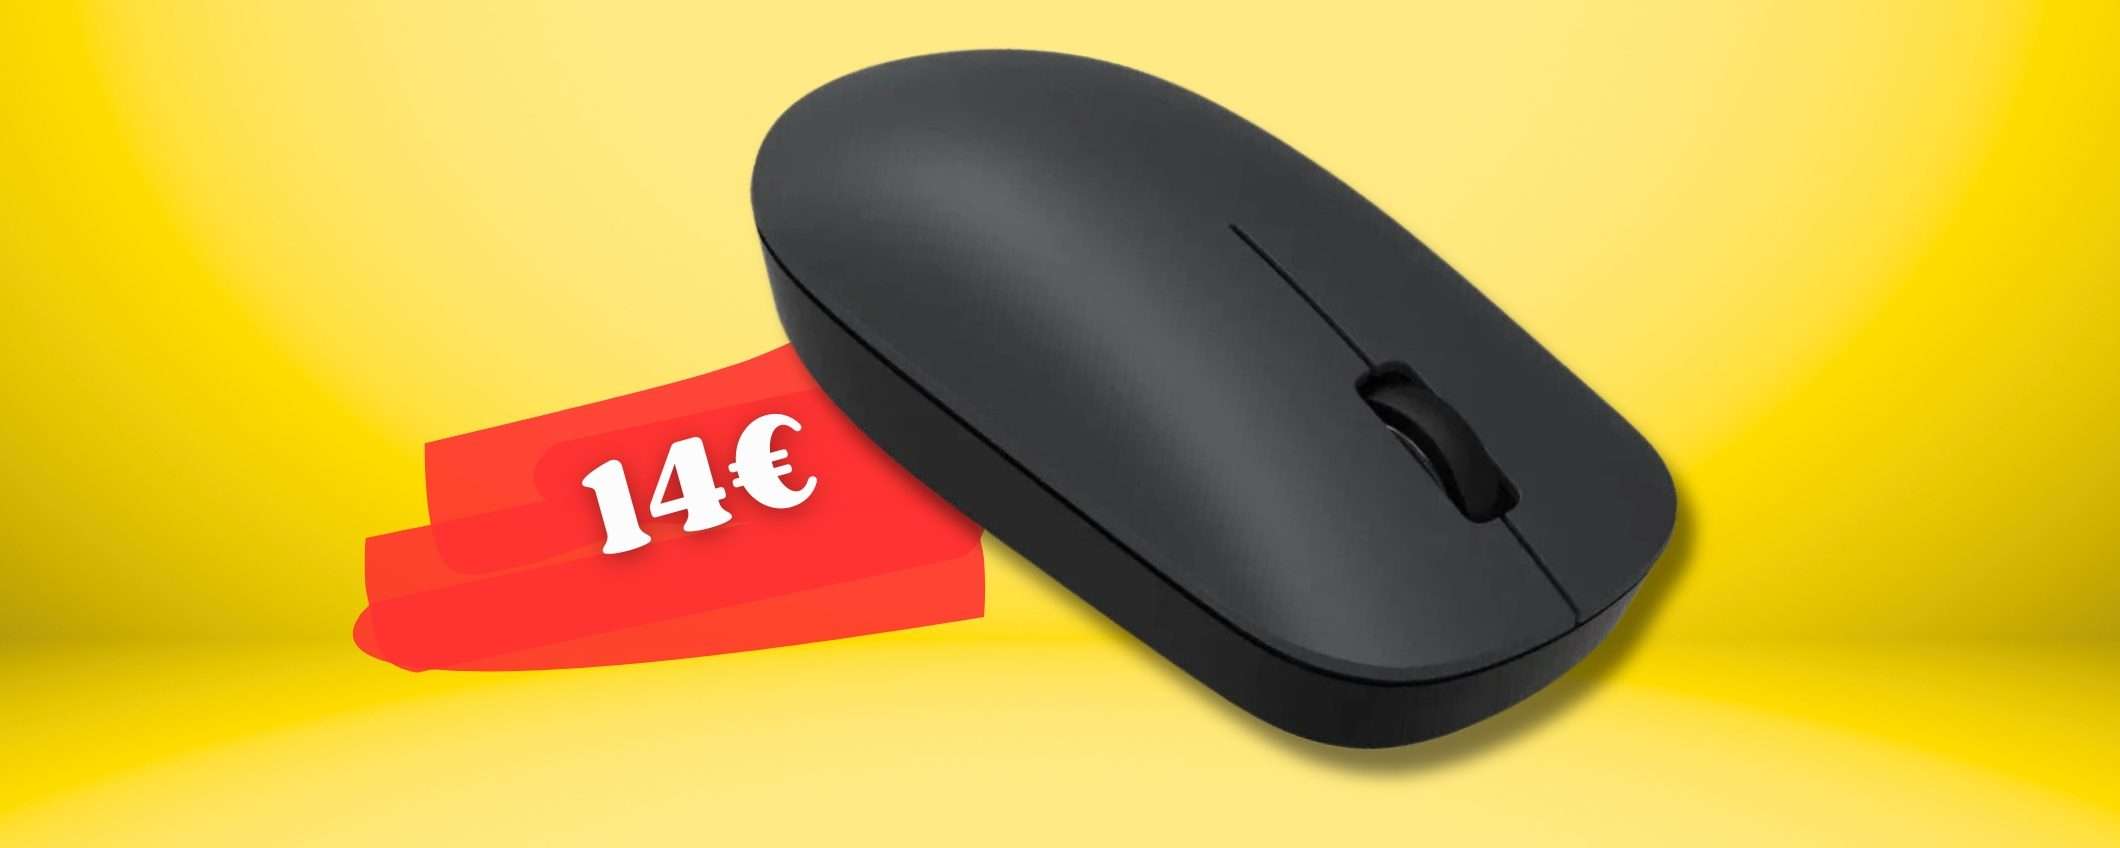 Mouse wireless XIAOMI, eccezionale nella sua SEMPLICITÀ: solo 14€